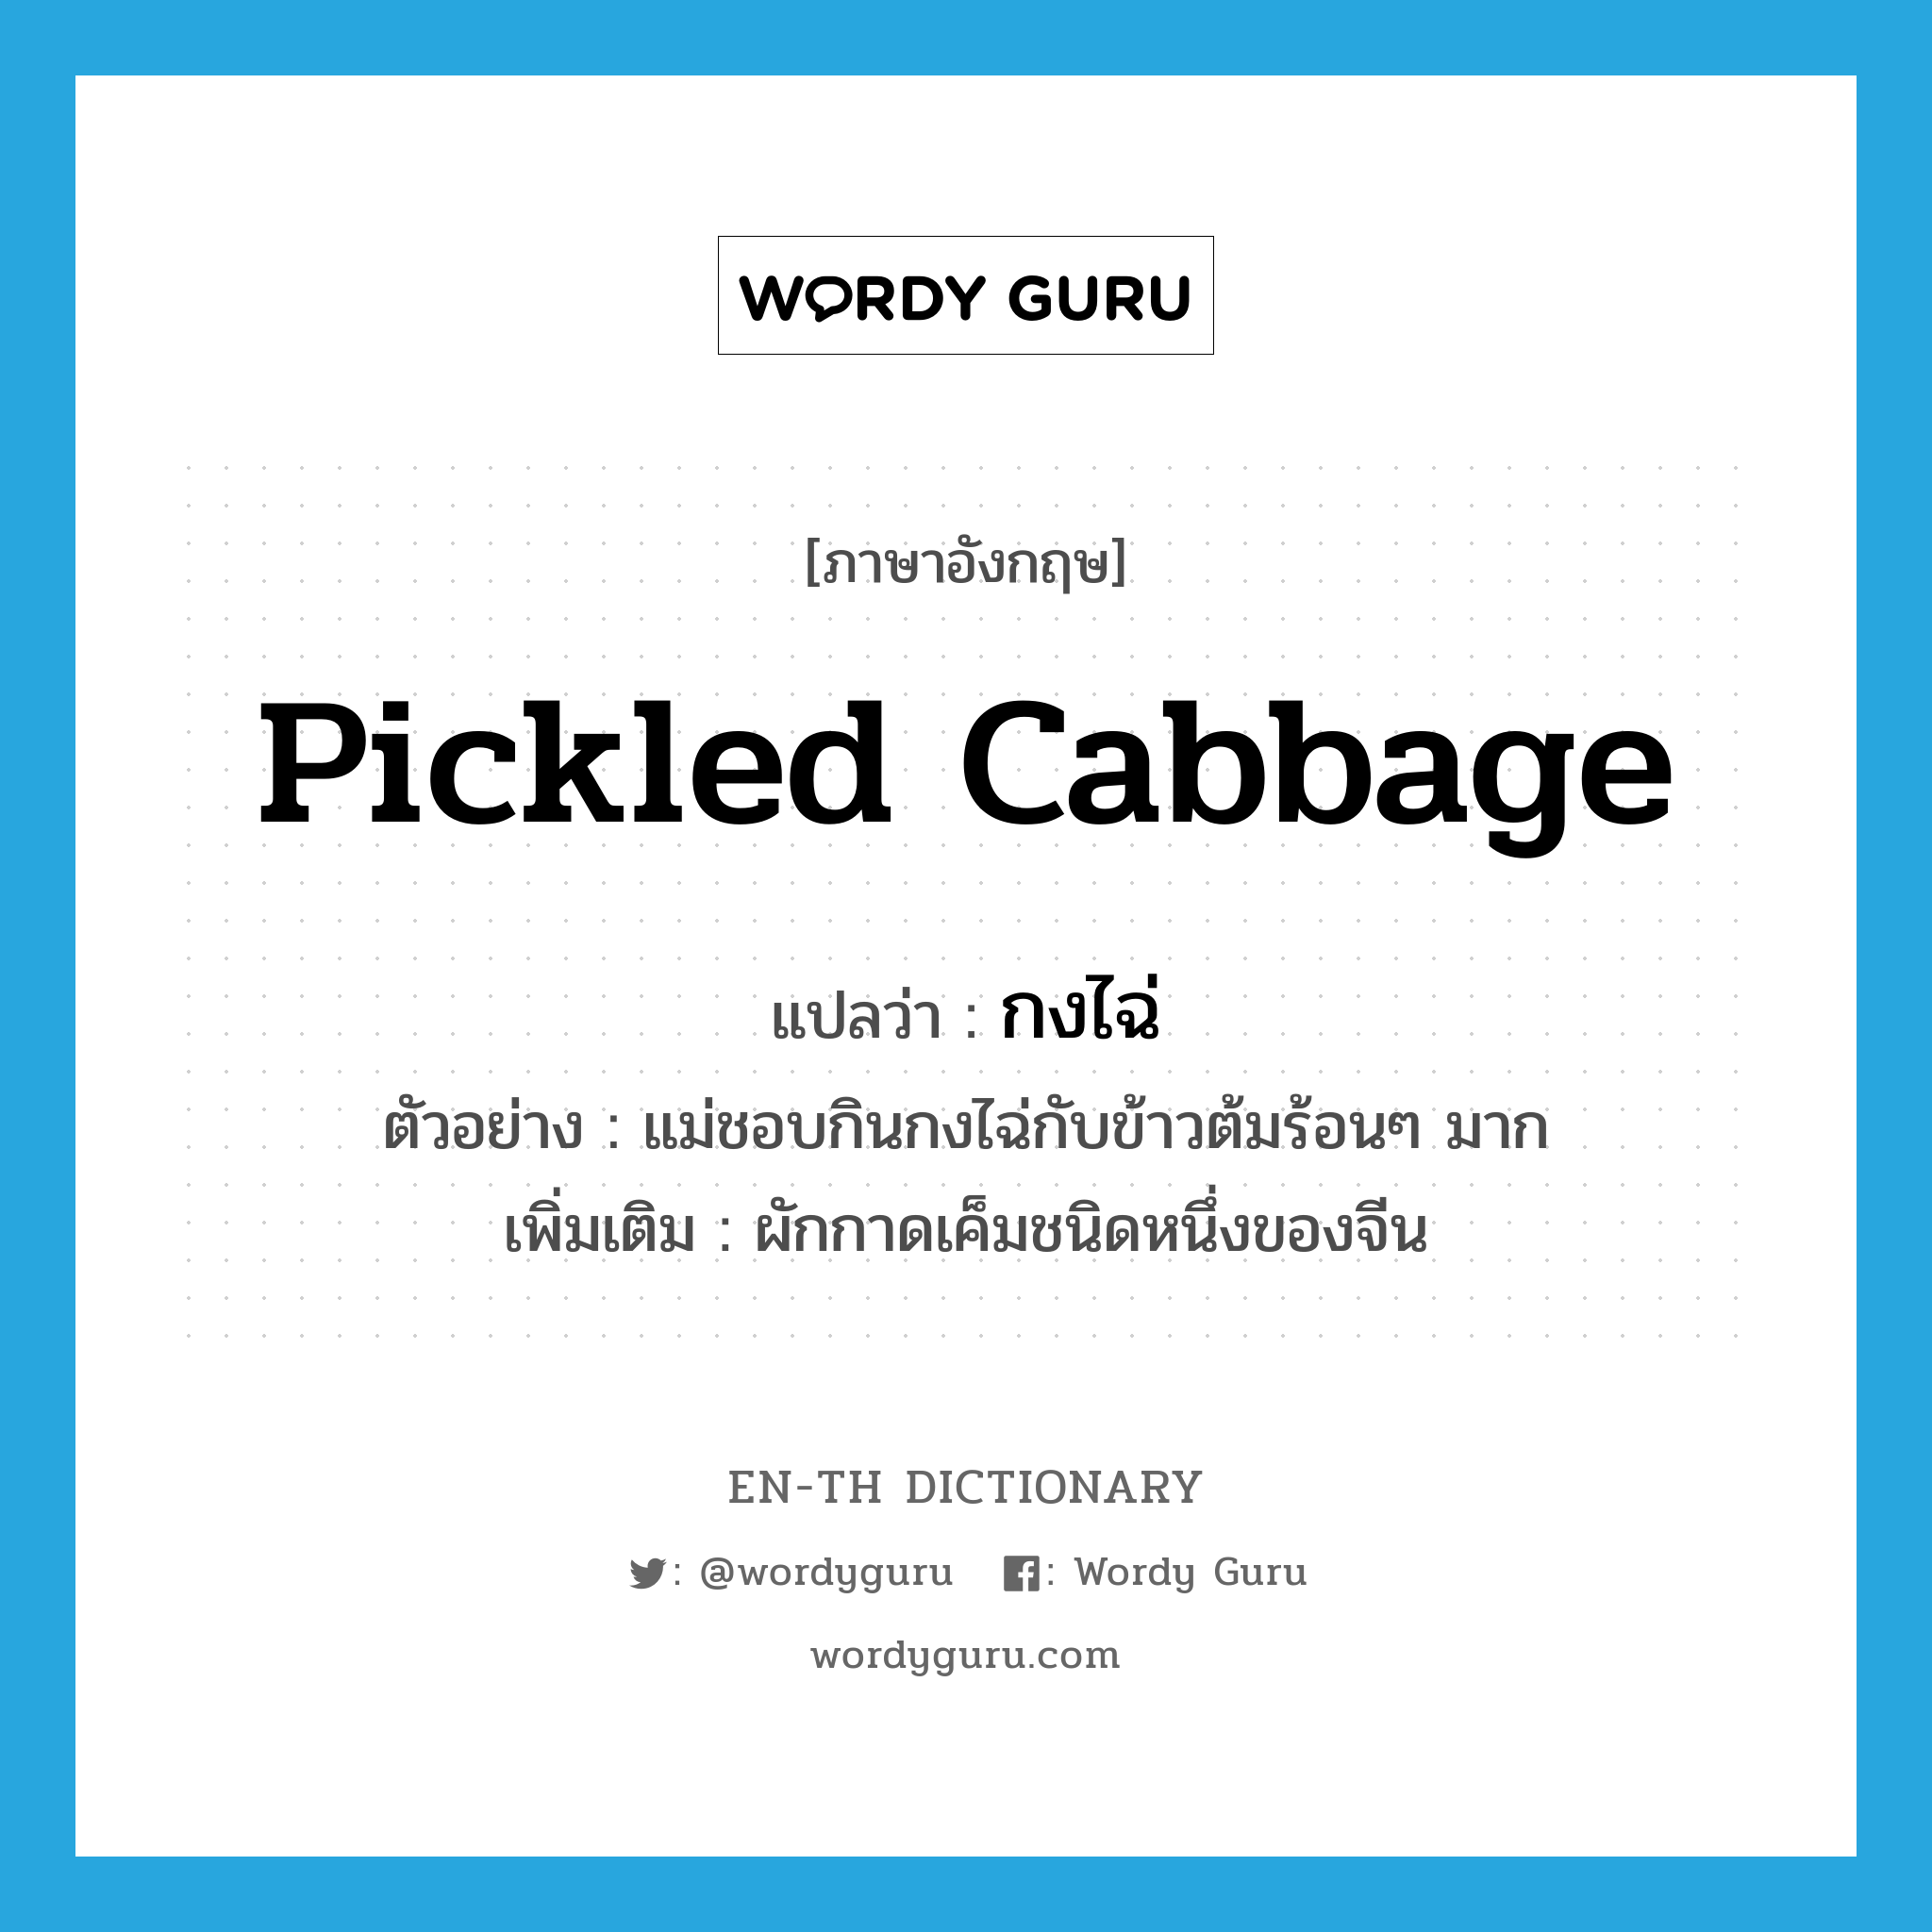 กงไฉ่ ภาษาอังกฤษ?, คำศัพท์ภาษาอังกฤษ กงไฉ่ แปลว่า pickled cabbage ประเภท N ตัวอย่าง แม่ชอบกินกงไฉ่กับข้าวต้มร้อนๆ มาก เพิ่มเติม ผักกาดเค็มชนิดหนึ่งของจีน หมวด N